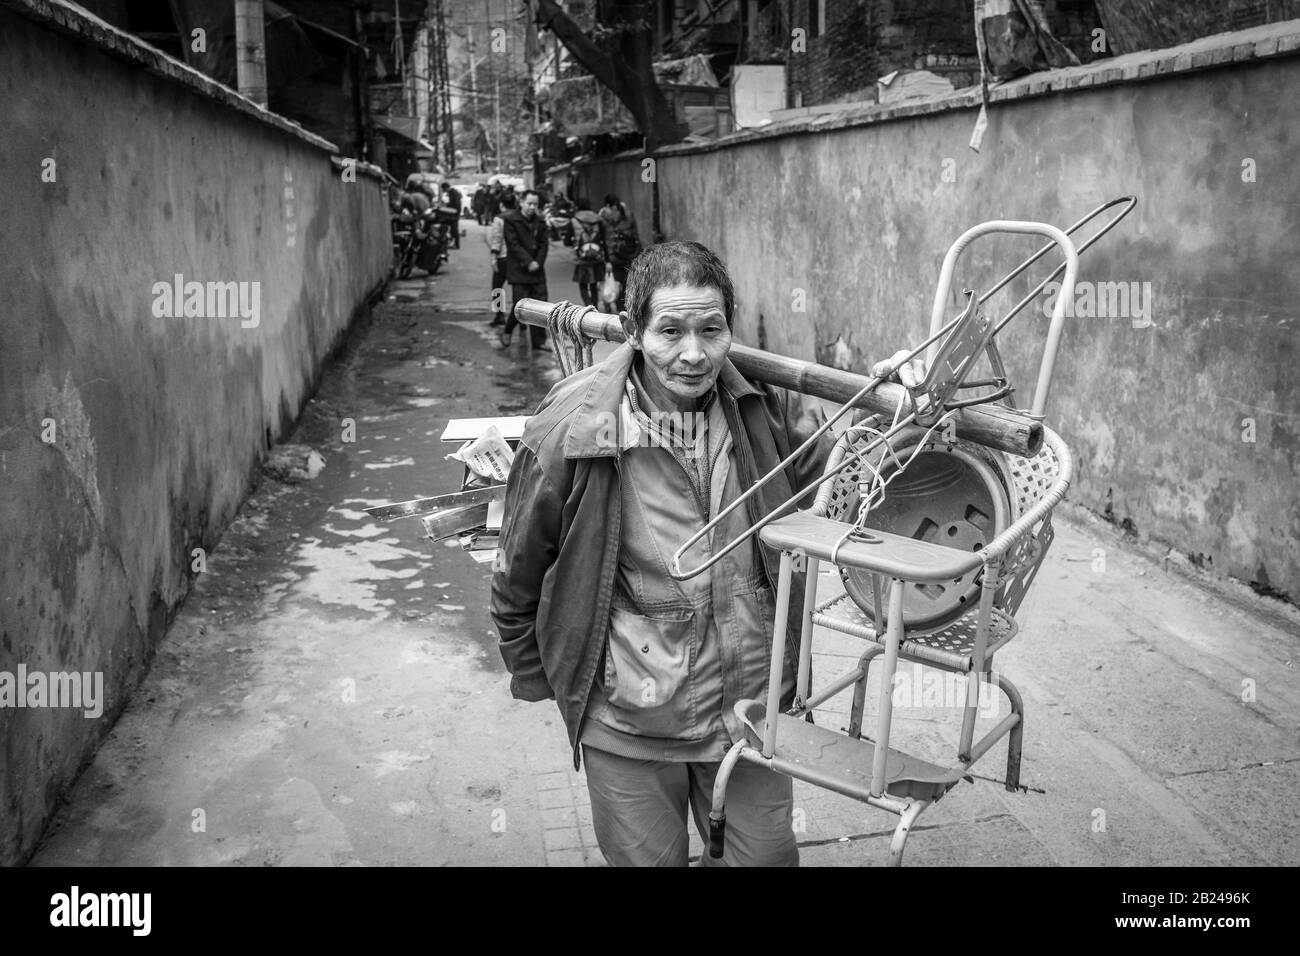 Straßenszene in einem Altstadtviertel von Chongqing. Eine Frau mit ihren Möbeln zieht aus ihrer Wohnung, Chongqing, China Stockfoto